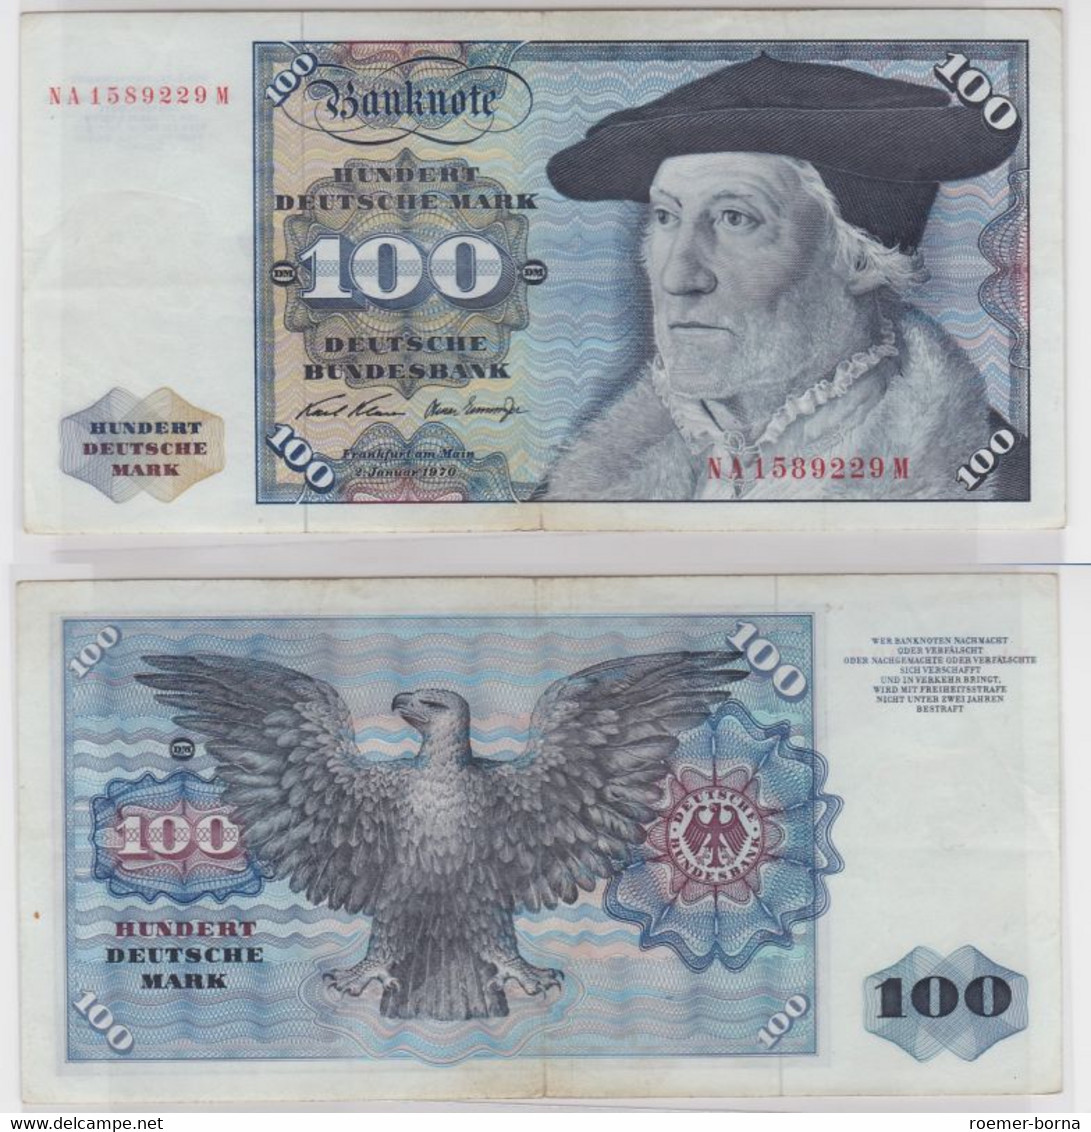 T147177 Banknote 100 DM Deutsche Mark Ro 273a Schein 2.Jan. 1970 KN NA 1589229 M - 100 Deutsche Mark